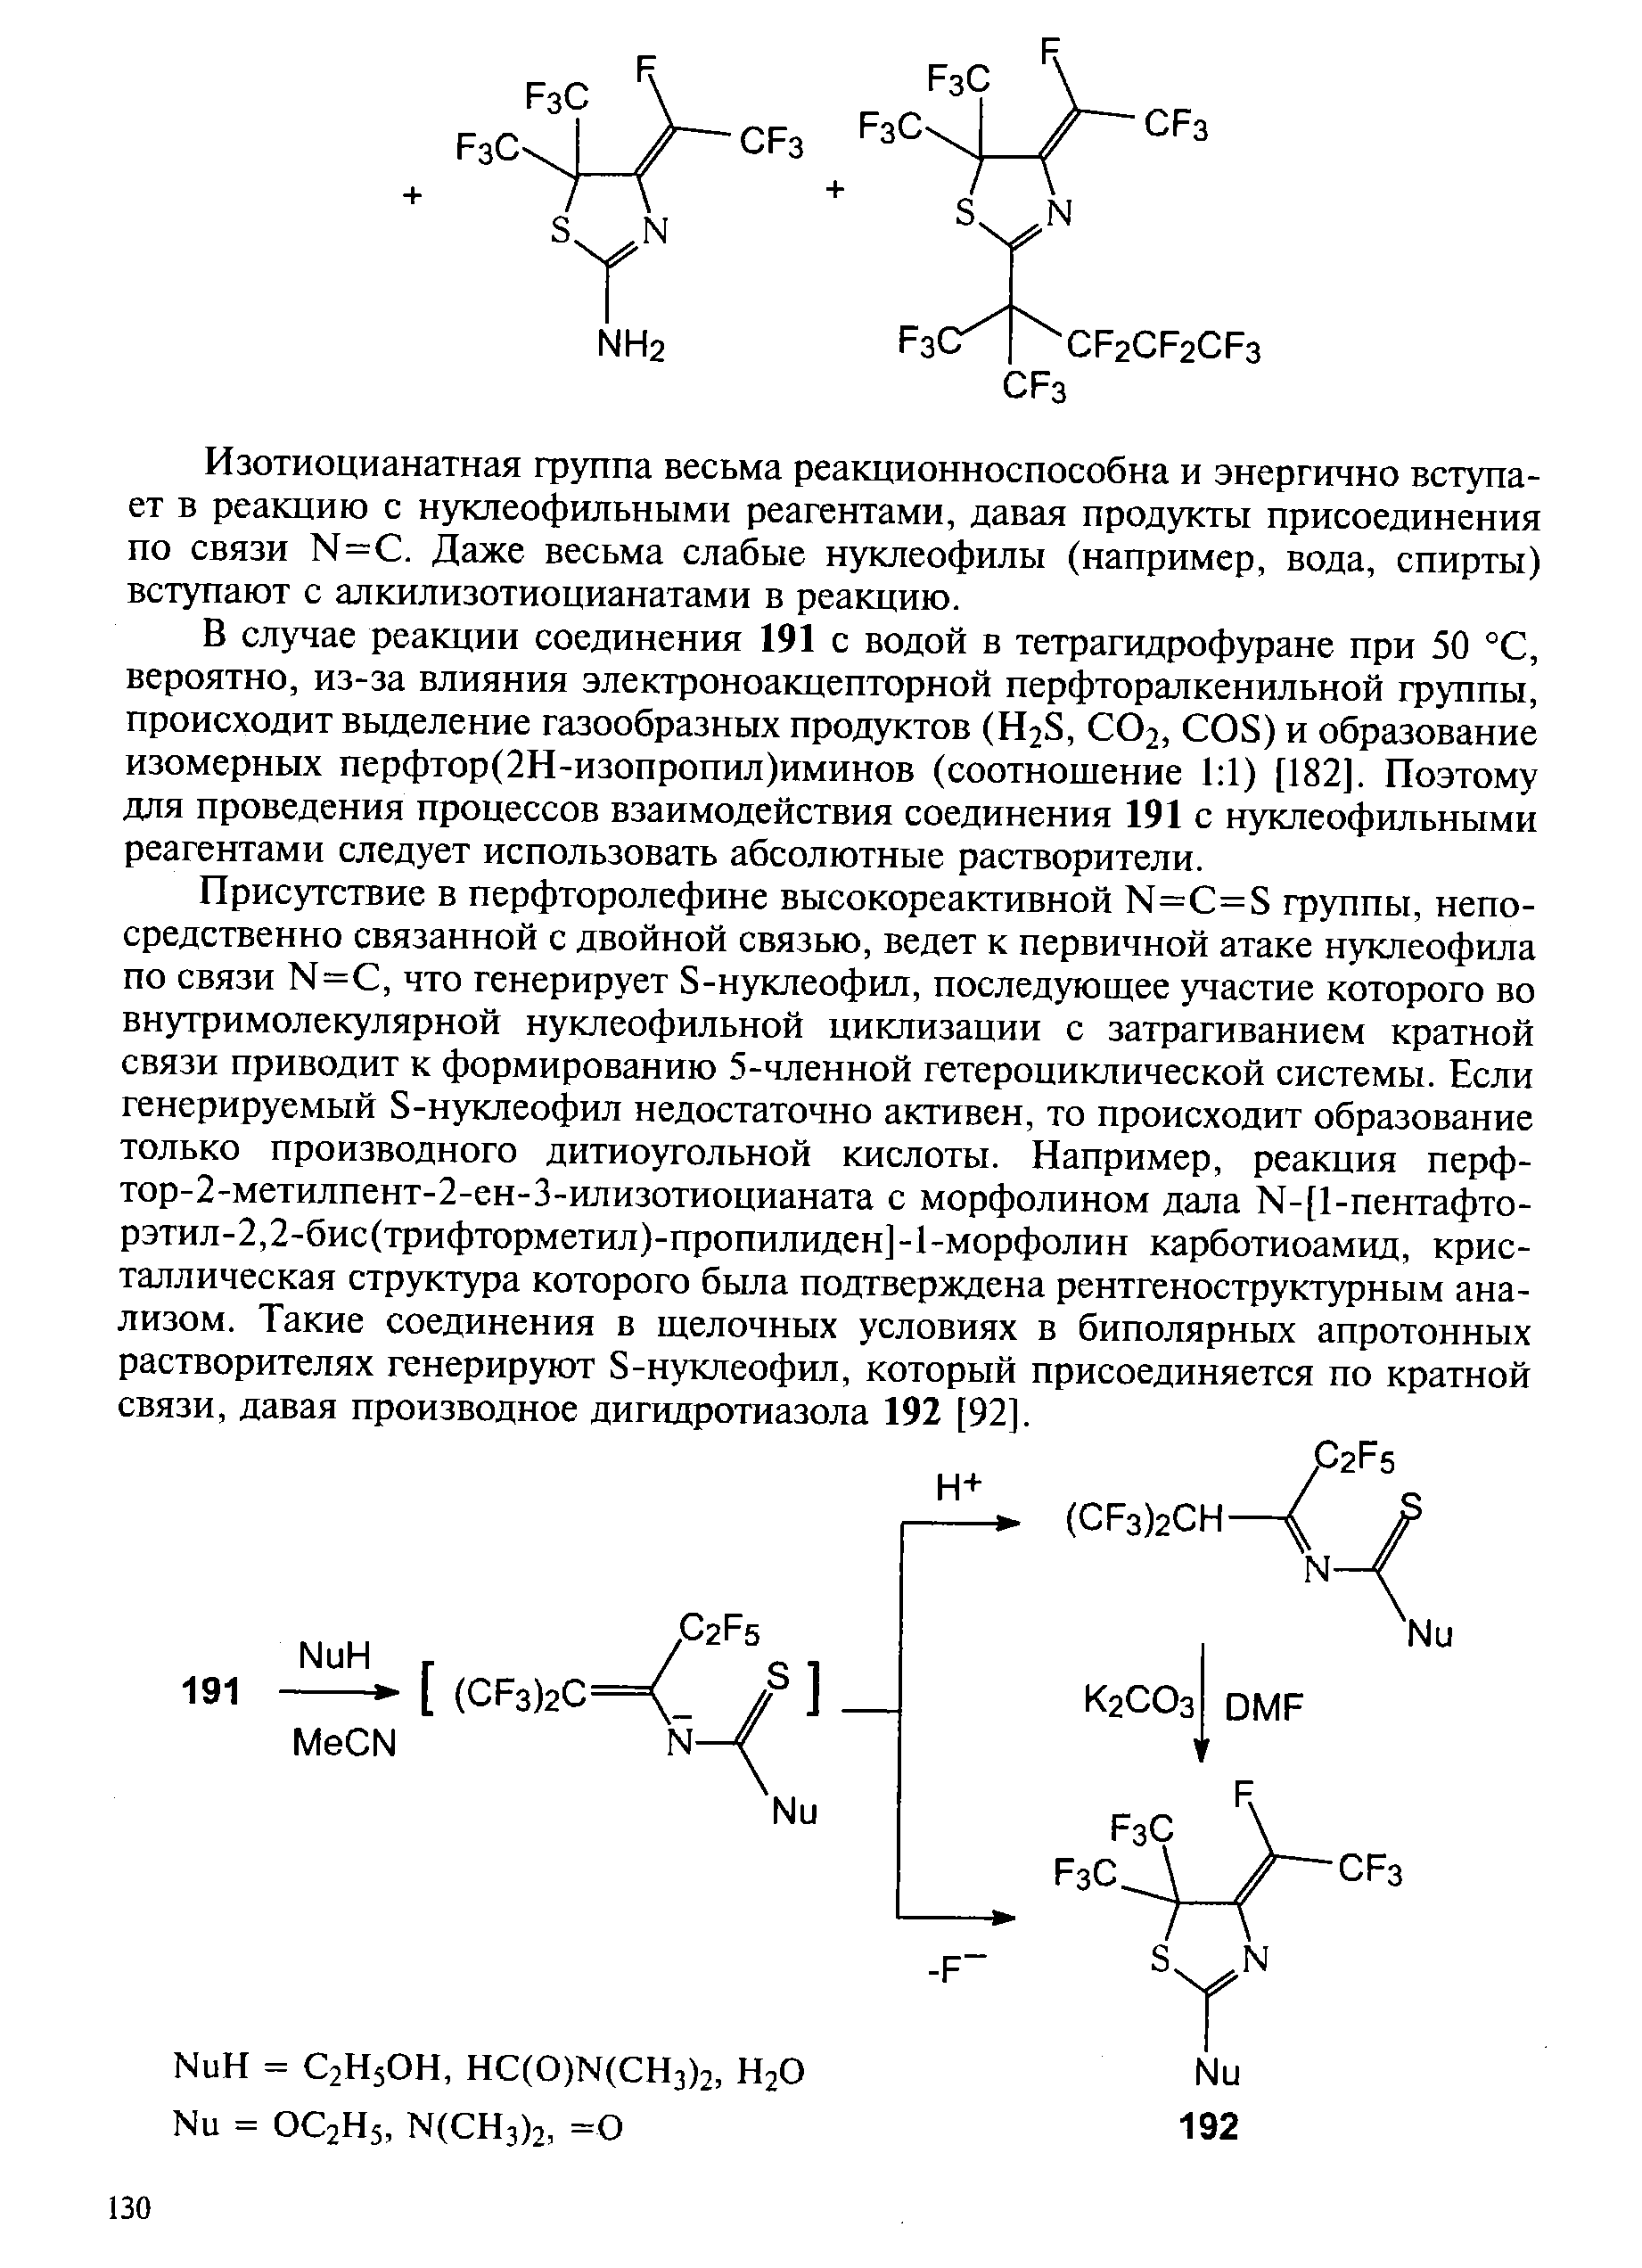 Изотиоцианатная фуппа весьма реакционноспособна и энергично вступает в реакцию с нуклеофильными реагентами, давая продукты присоединения по связи N= . Даже весьма слабые нуклеофилы (например, вода, спирты) вступают с алкилизотиоцианатами в реакцию.